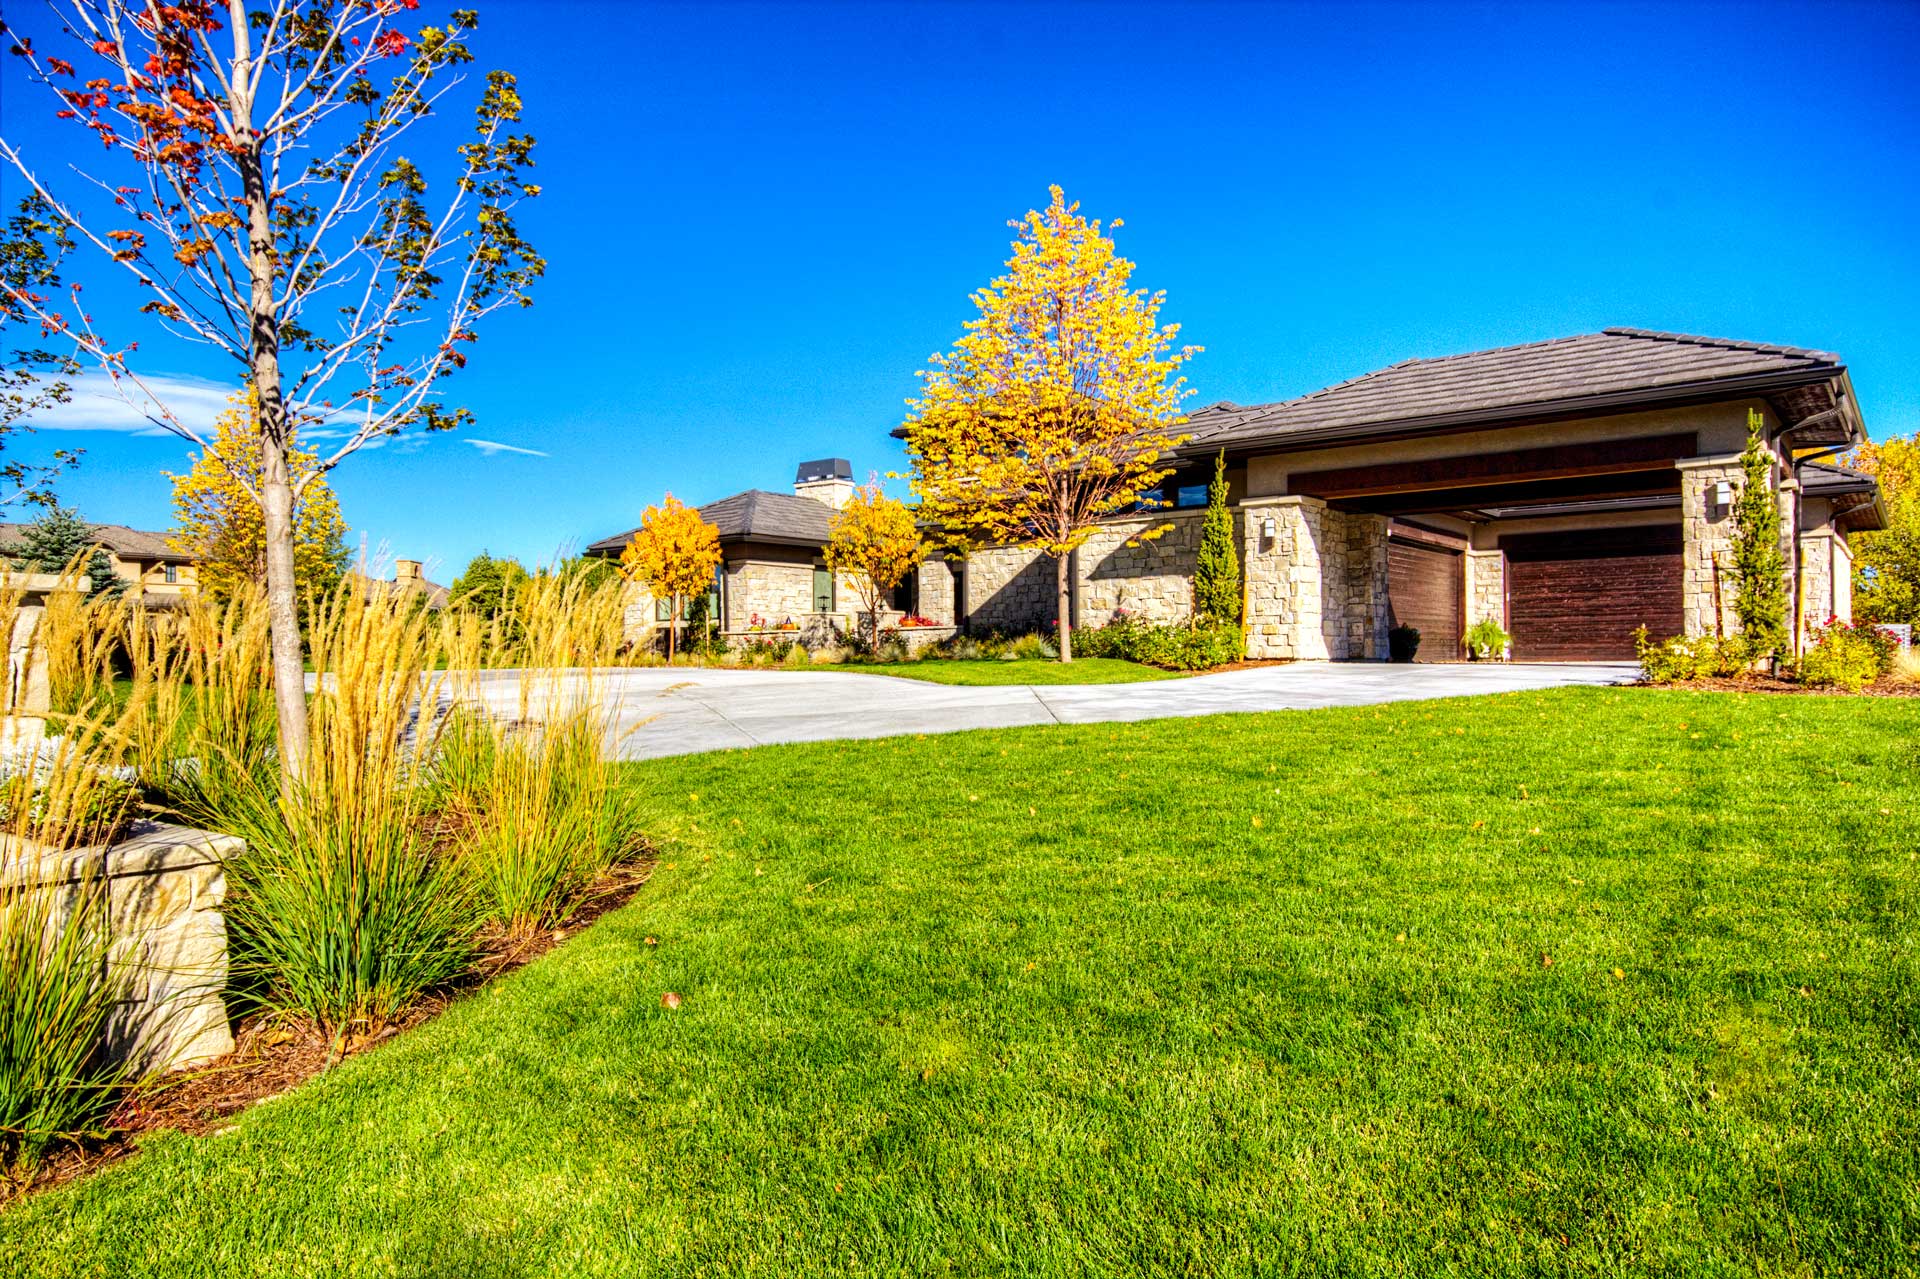 Preserve front lawn, driveway & garage entrance